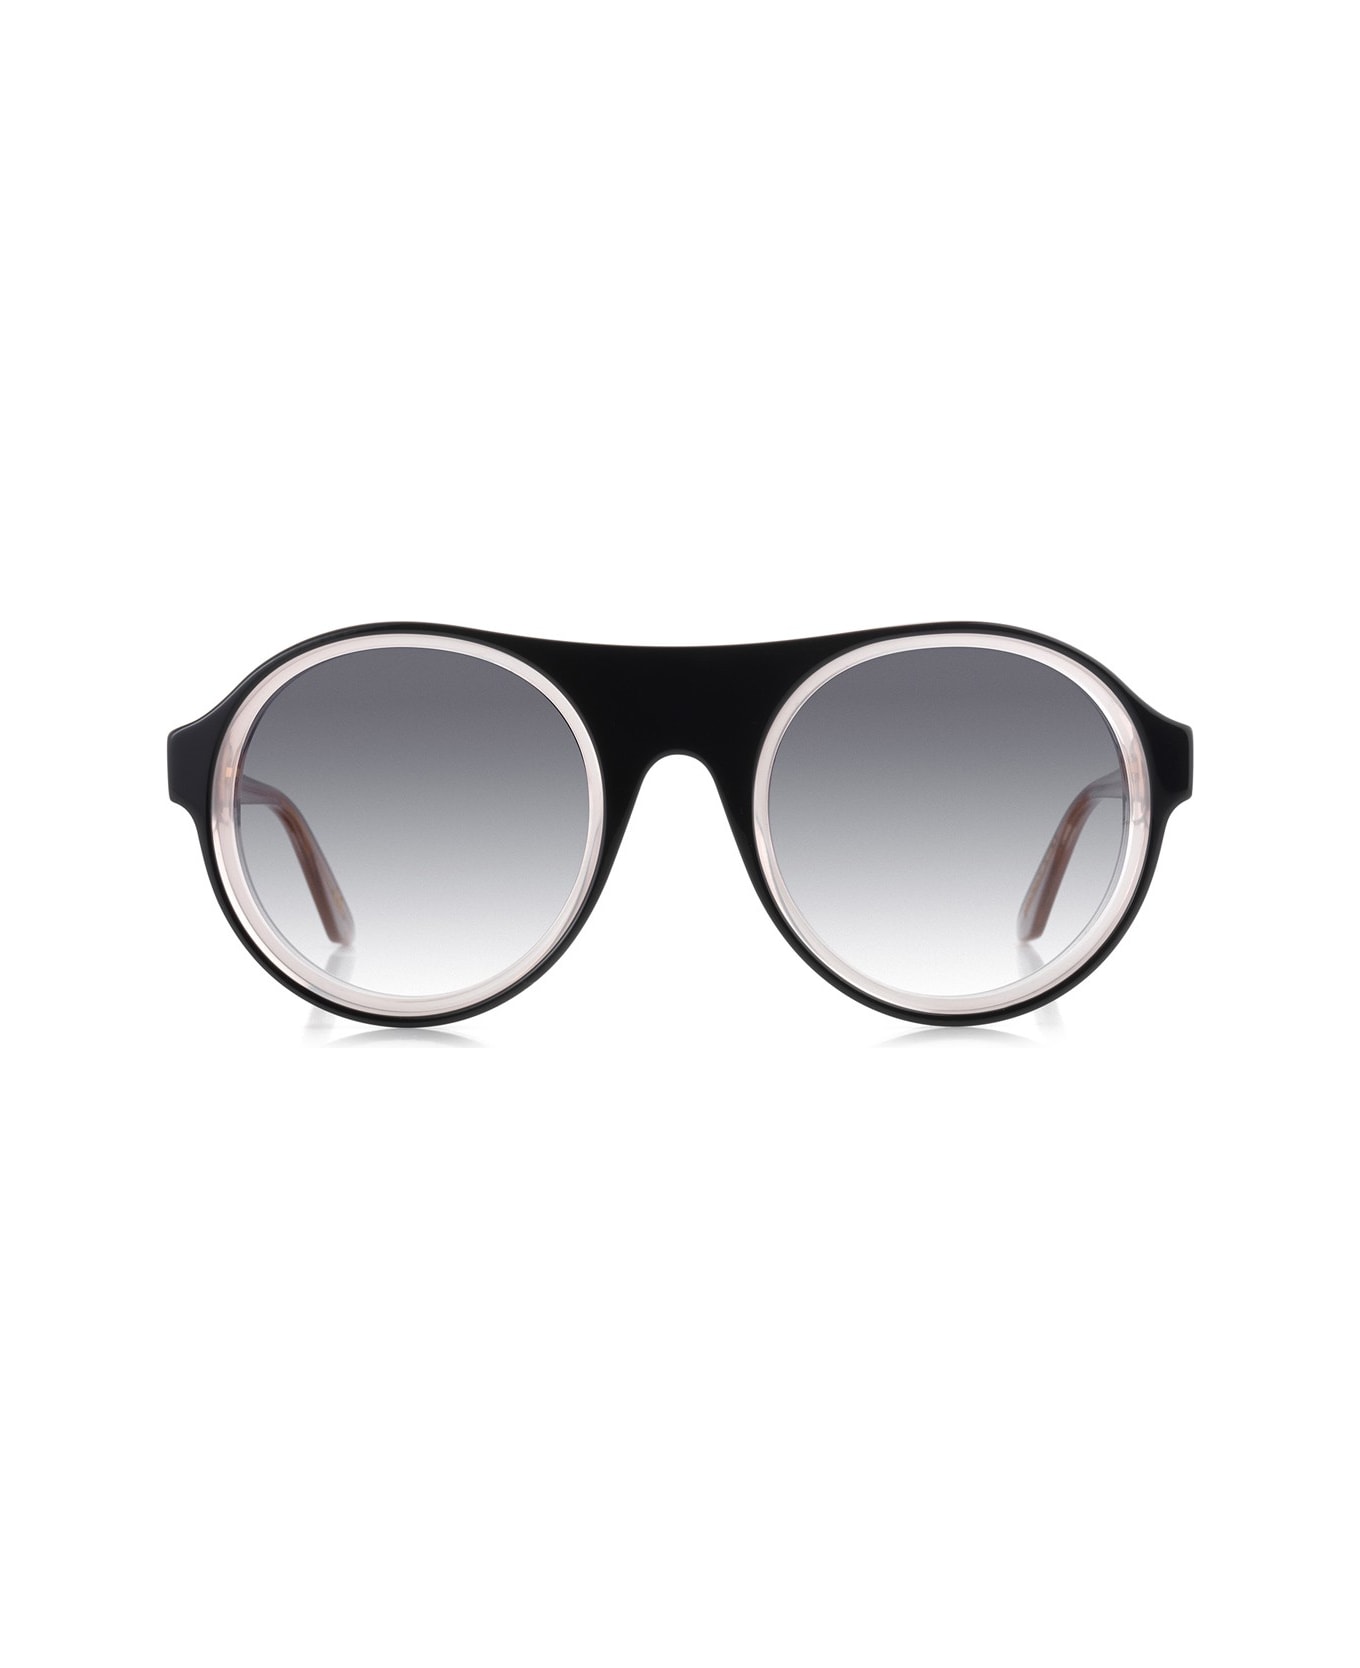 Robert La Roche Rlr S300 Sunglasses - Nero